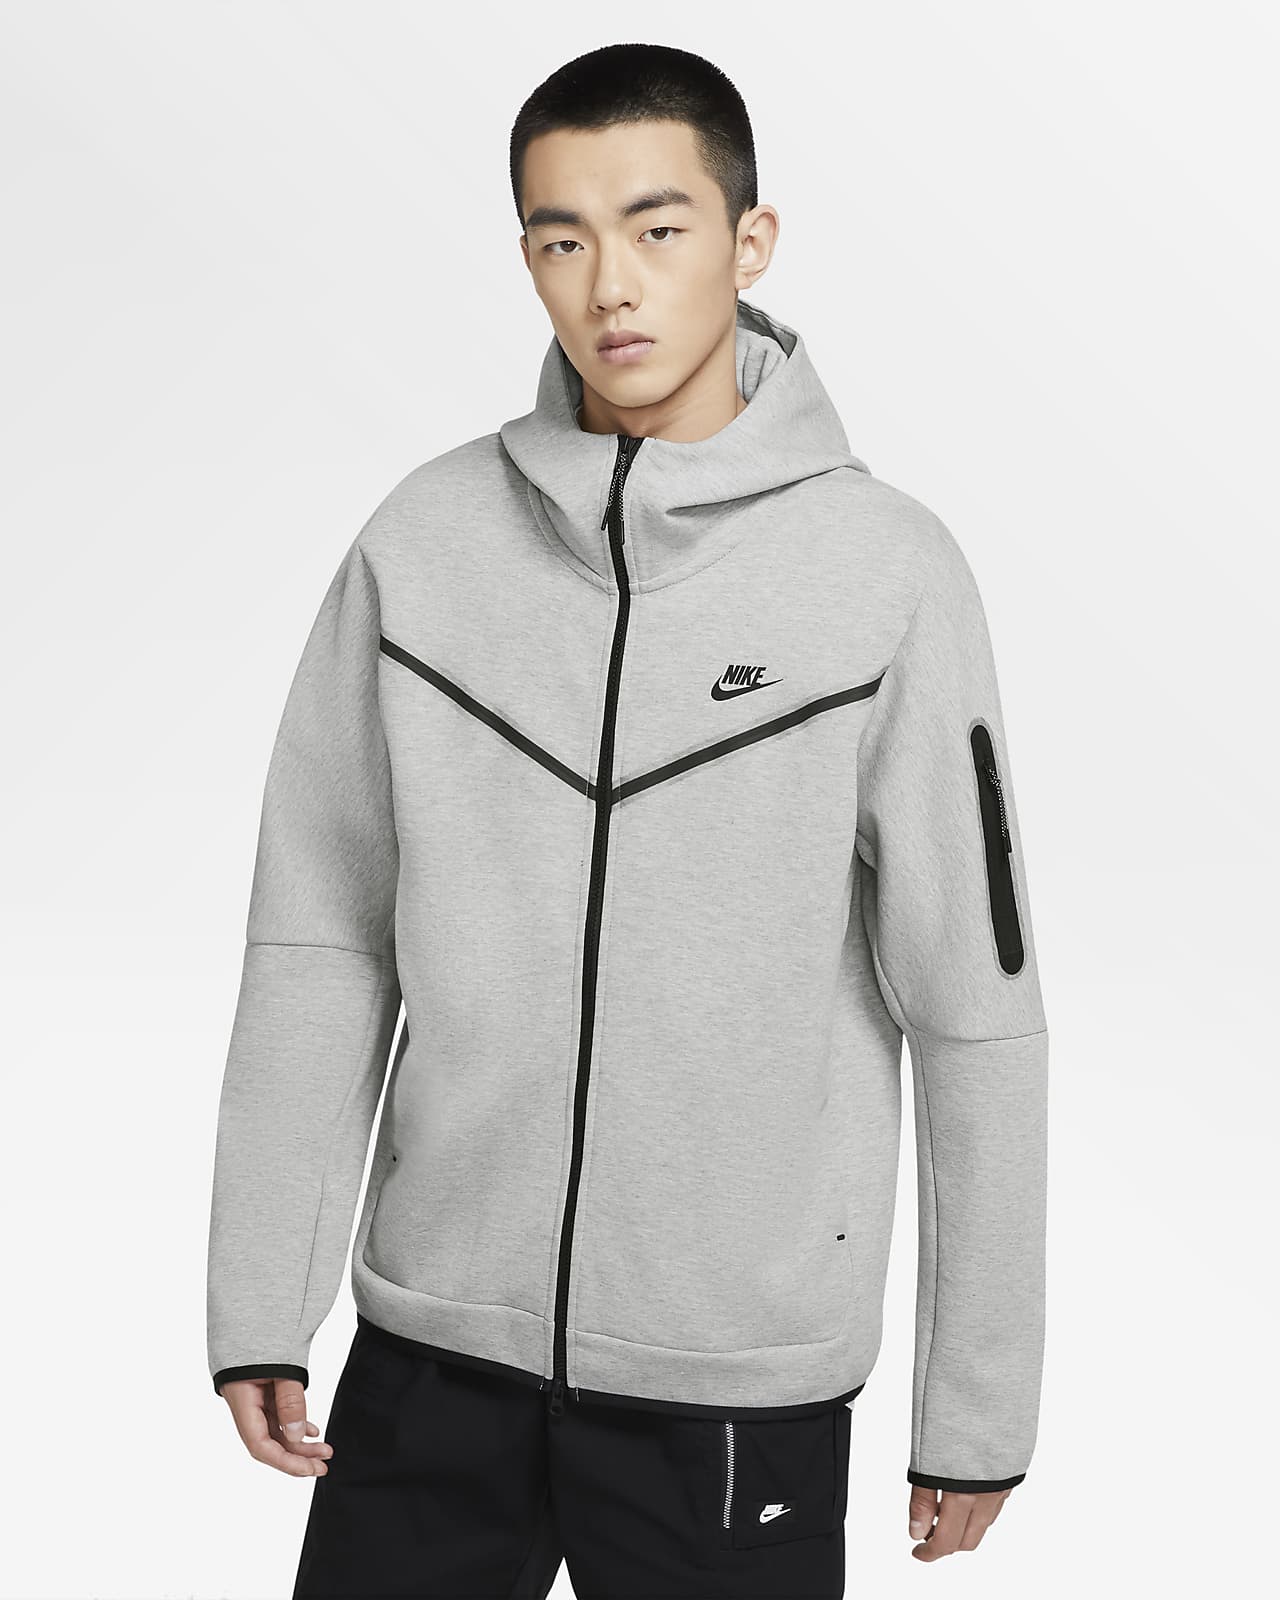 Ανδρική μπλούζα με κουκούλα και φερμουάρ σε όλο το μήκος Nike Sportswear Tech Fleece